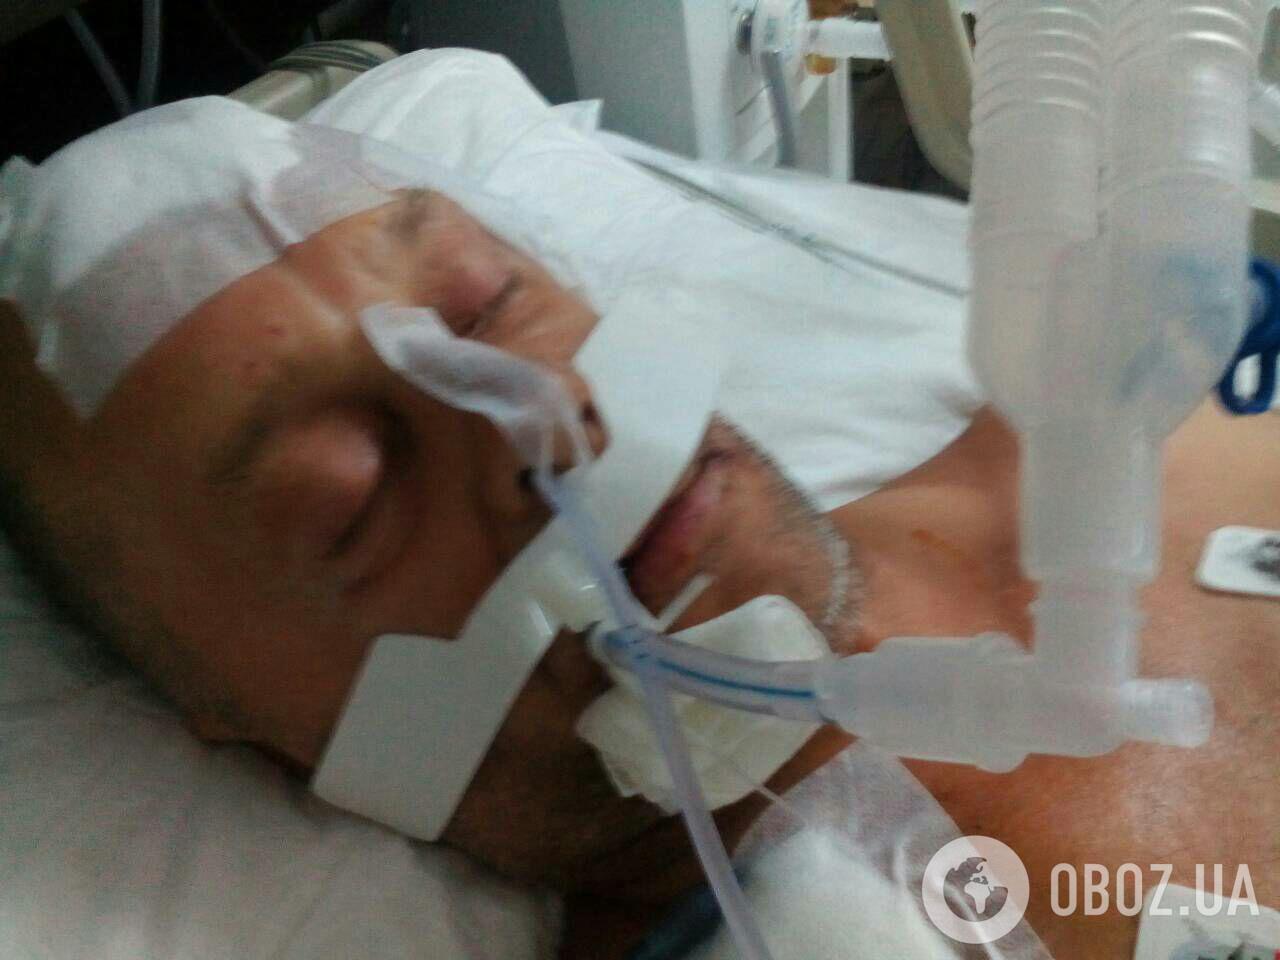 "Из-за проигрыша сборной": жестоко избитого россиянином украинца бросили в Турции в коме